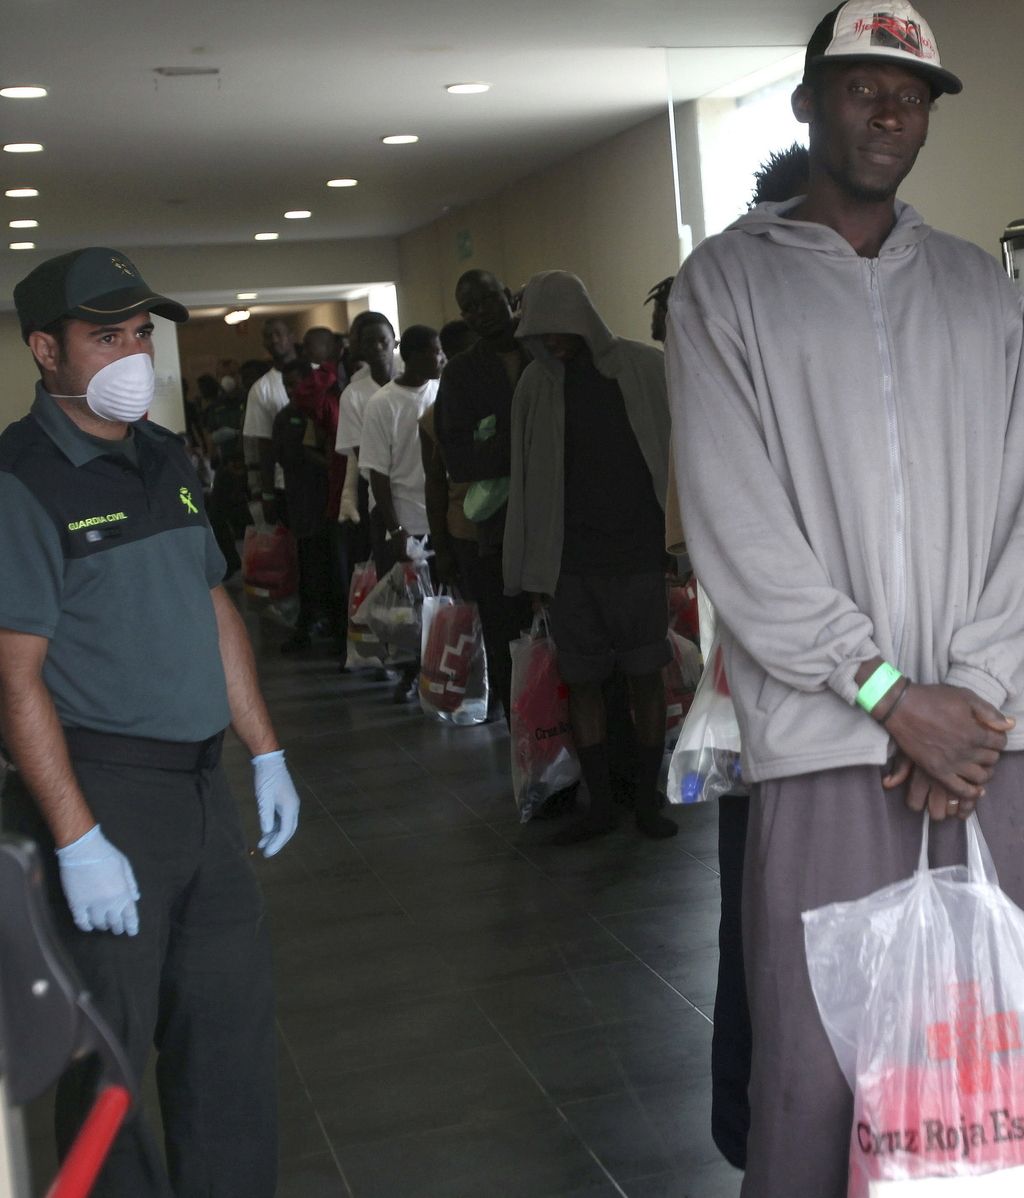 Sigue el traslado de inmigrantes desde Tarifa a centros de internamiento de la península